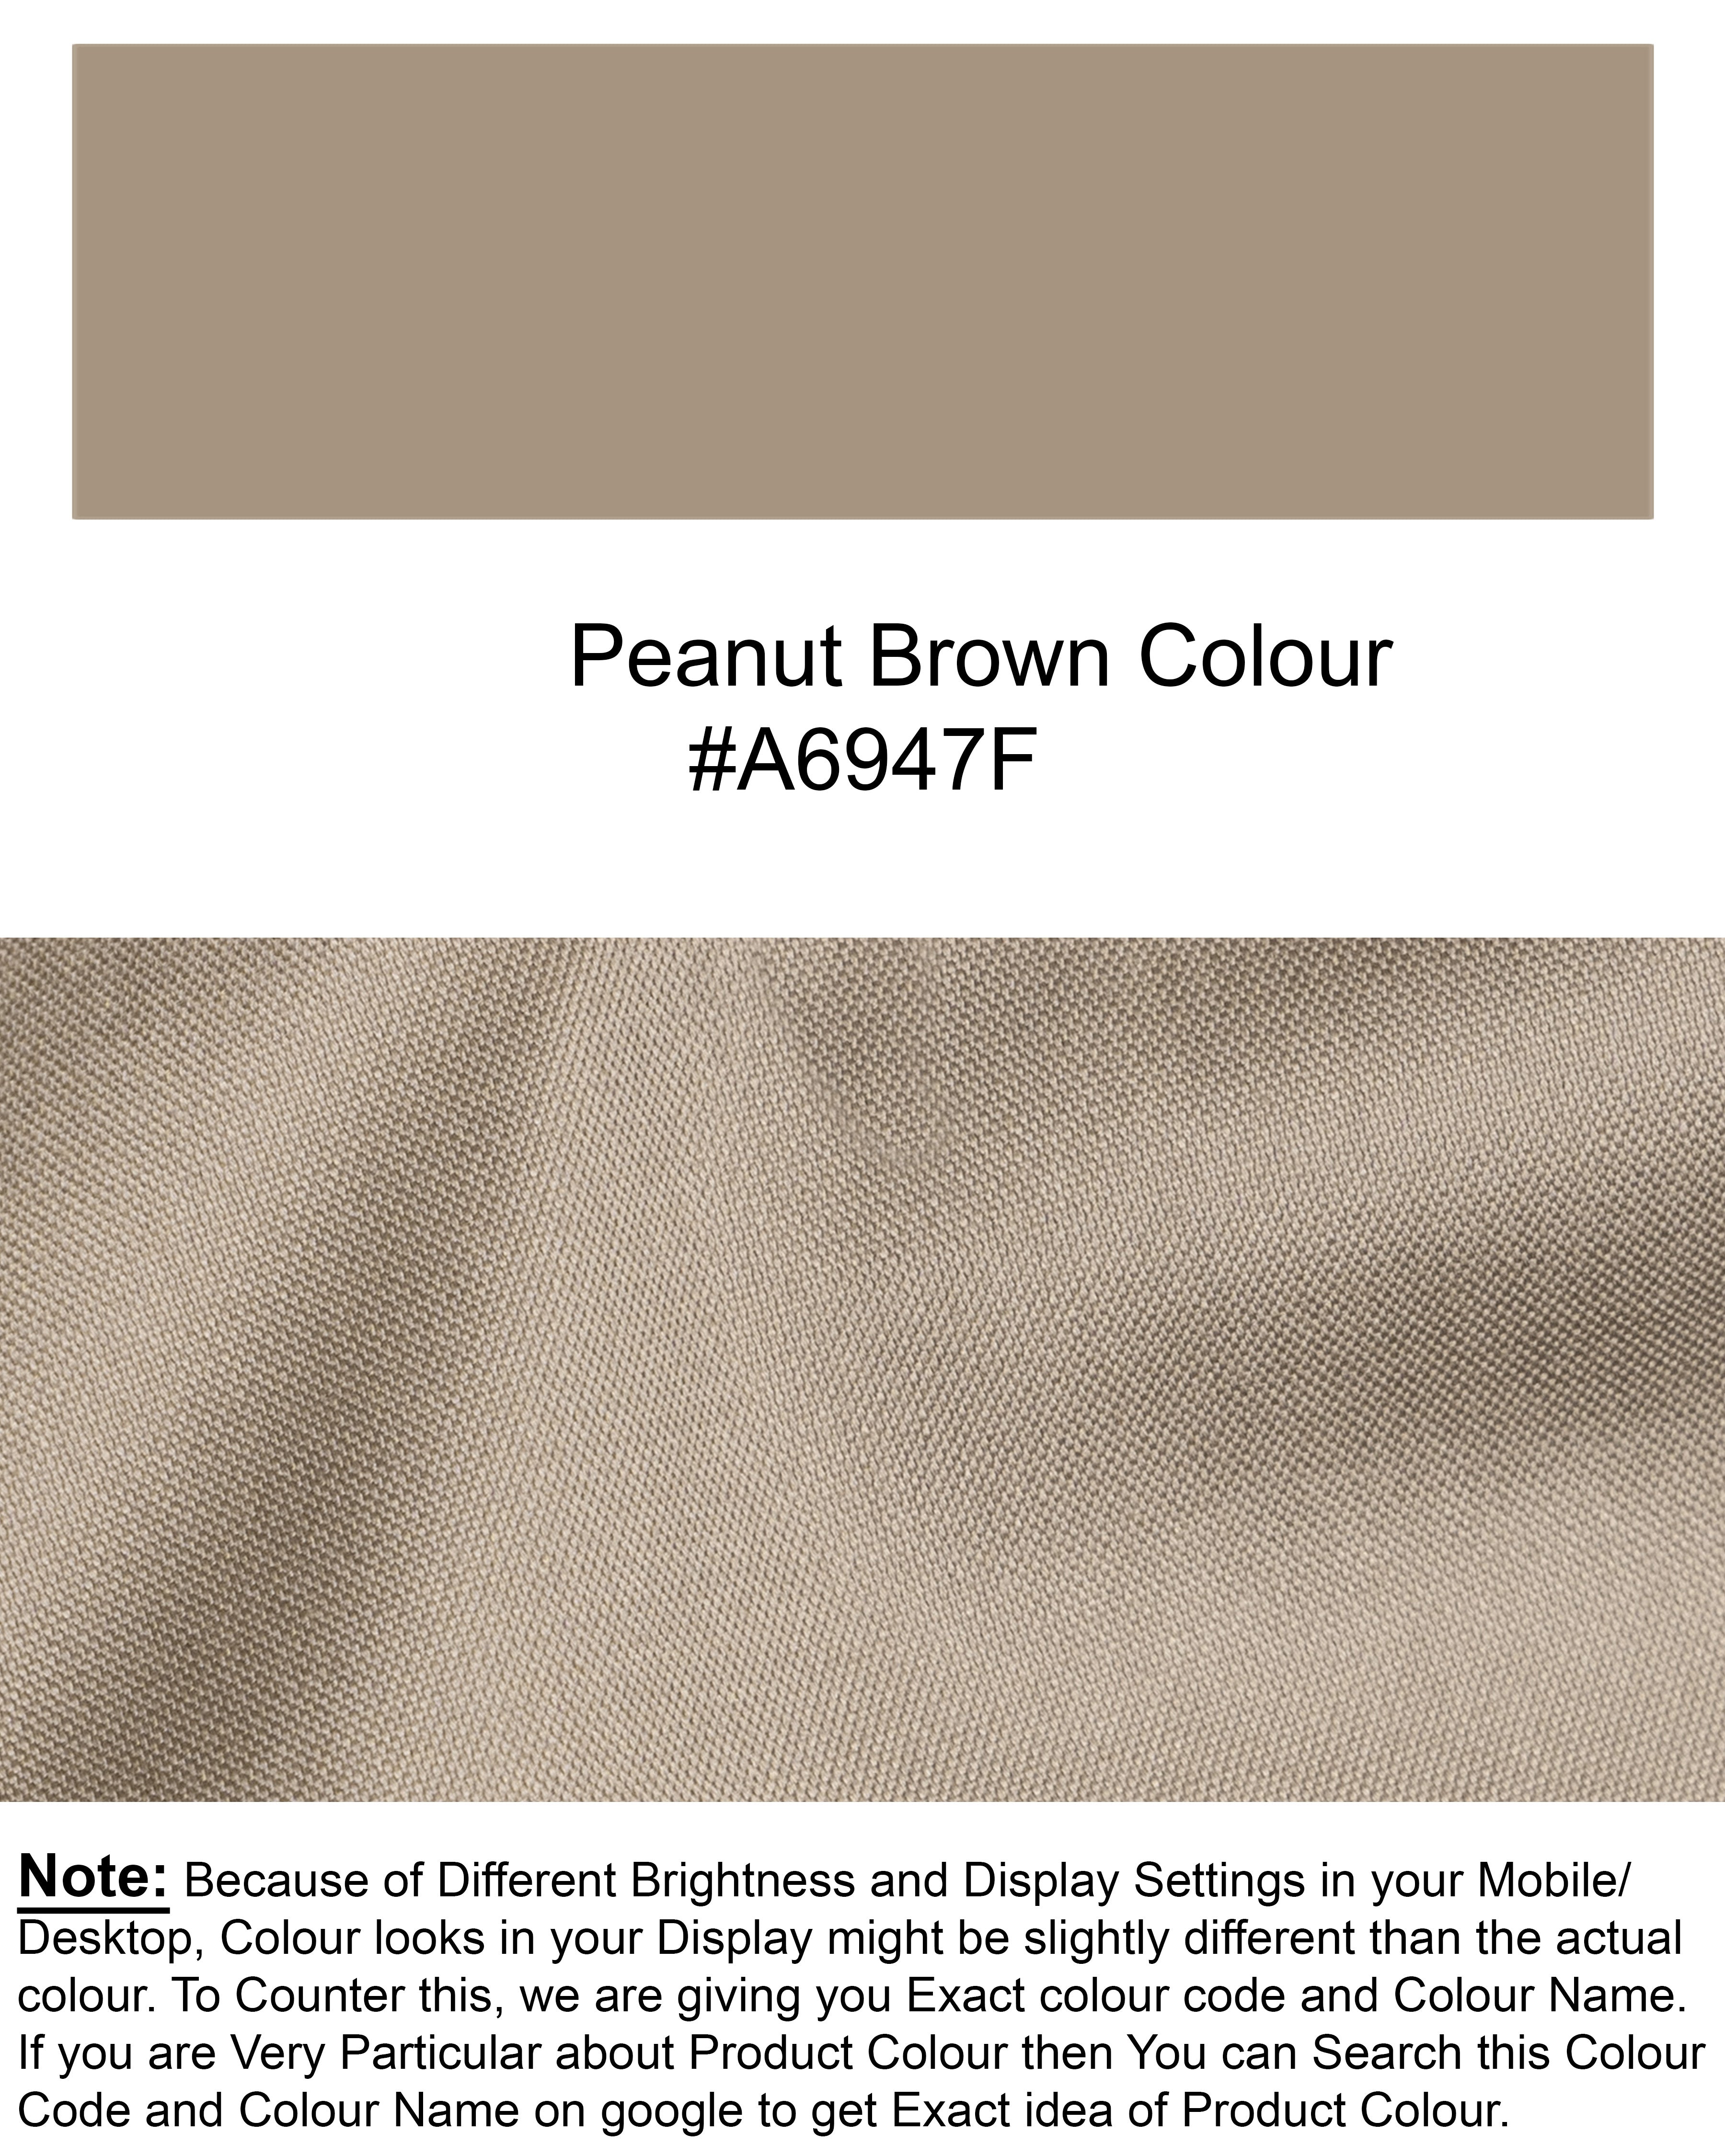 Peanut Brown Premium Cotton Shirt 5260-BD-38, 5260-BD-H-38, 5260-BD-39, 5260-BD-H-39, 5260-BD-40, 5260-BD-H-40, 5260-BD-42, 5260-BD-H-42, 5260-BD-44, 5260-BD-H-44, 5260-BD-46, 5260-BD-H-46, 5260-BD-48, 5260-BD-H-48, 5260-BD-50, 5260-BD-H-50, 5260-BD-52, 5260-BD-H-52